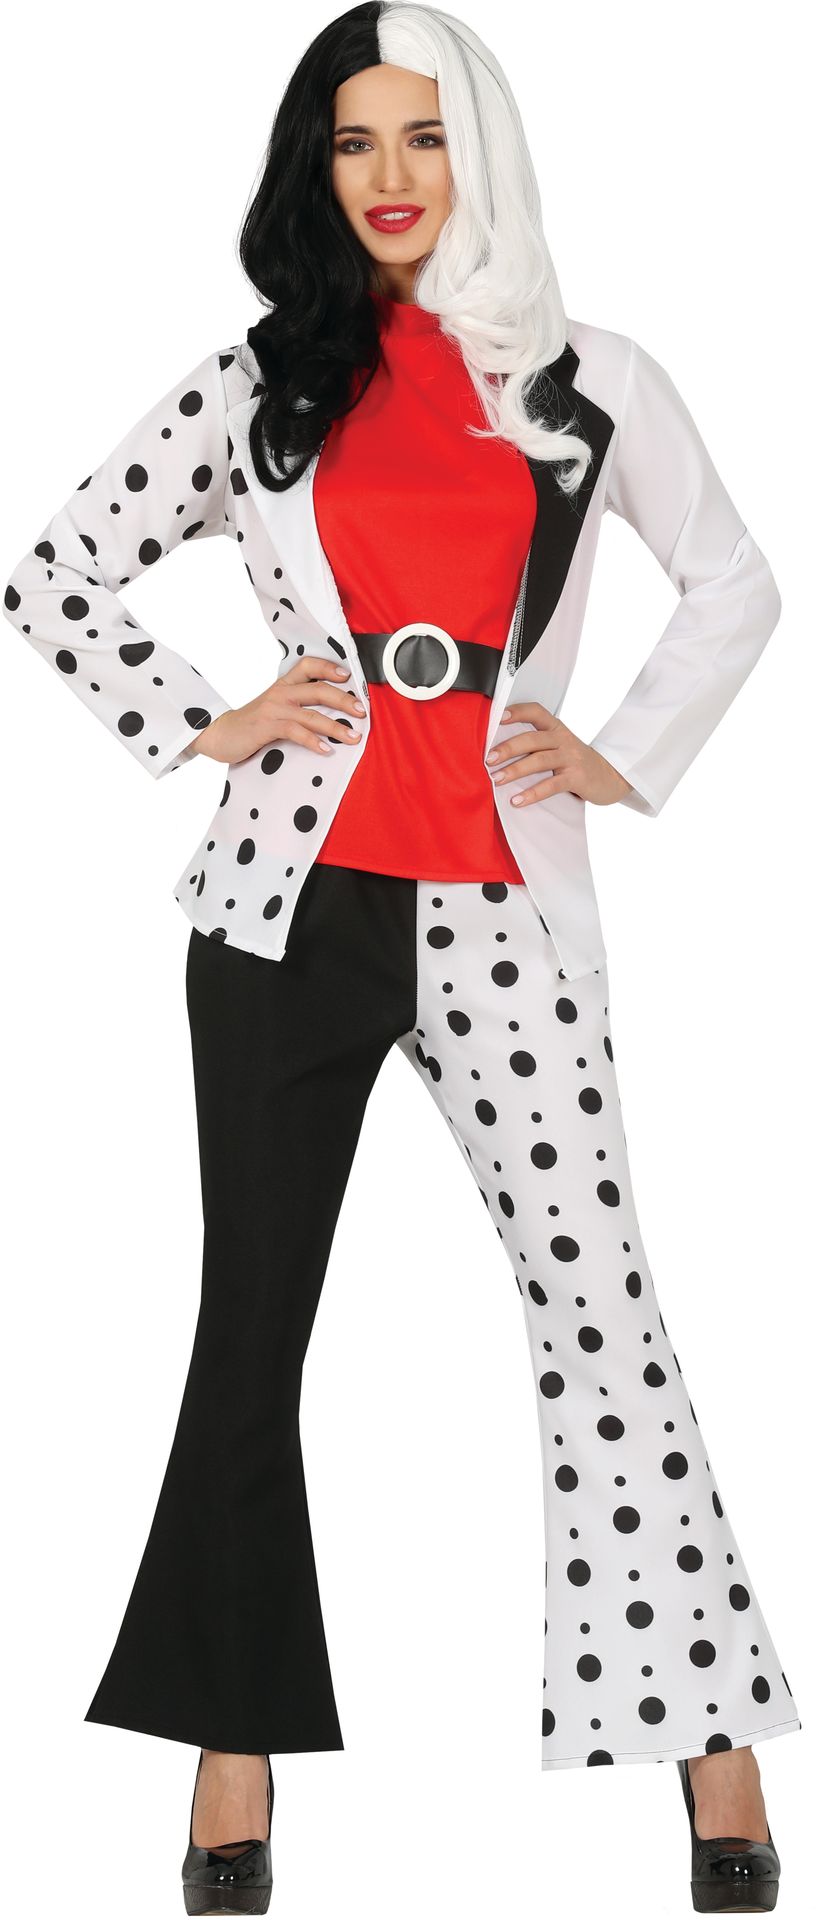 Cruella dalmatiers pak vrouw